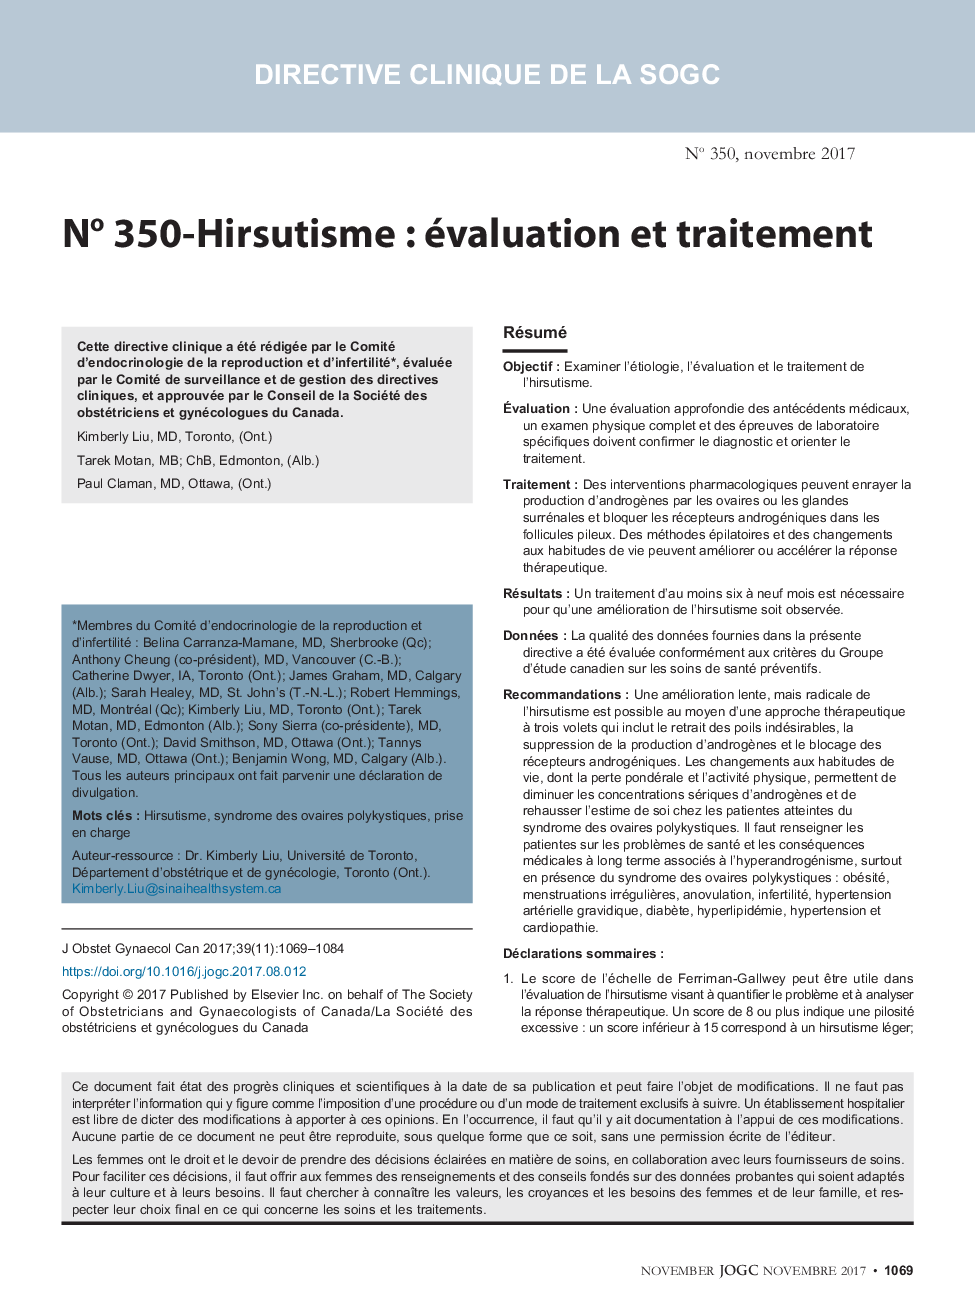 No 350-Hirsutisme : évaluation et traitement